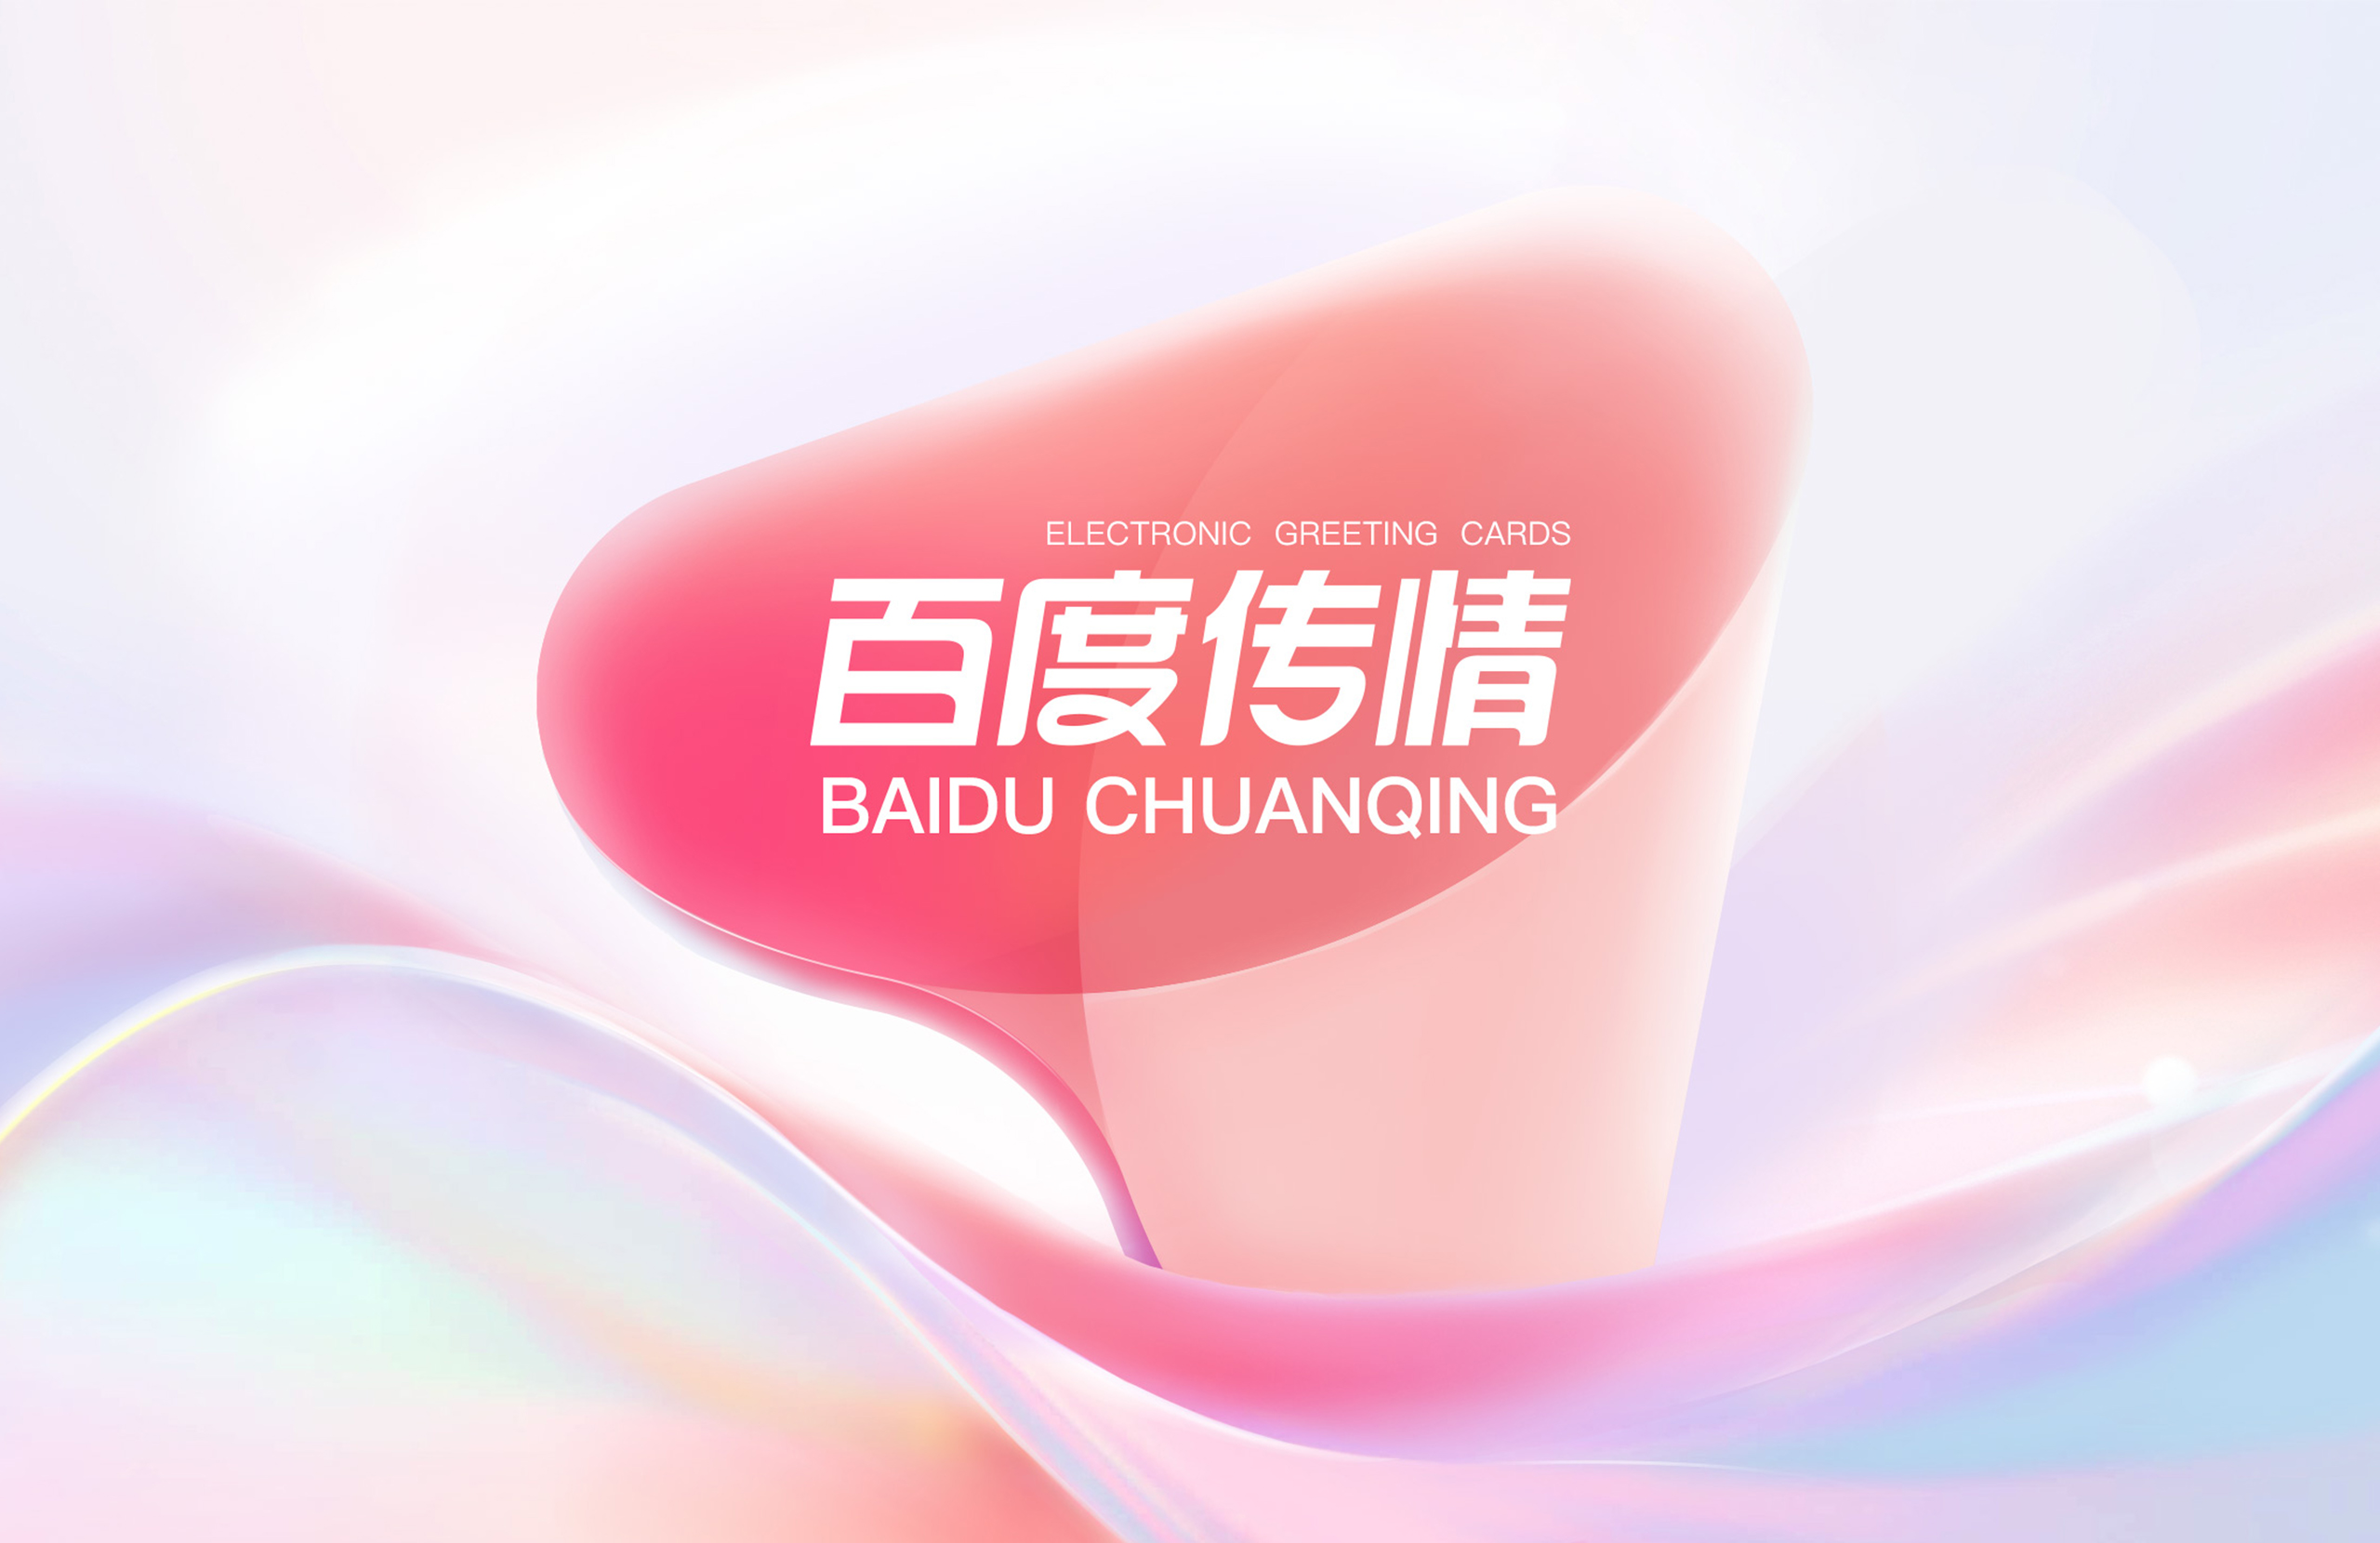 BAIDU CHUANQING